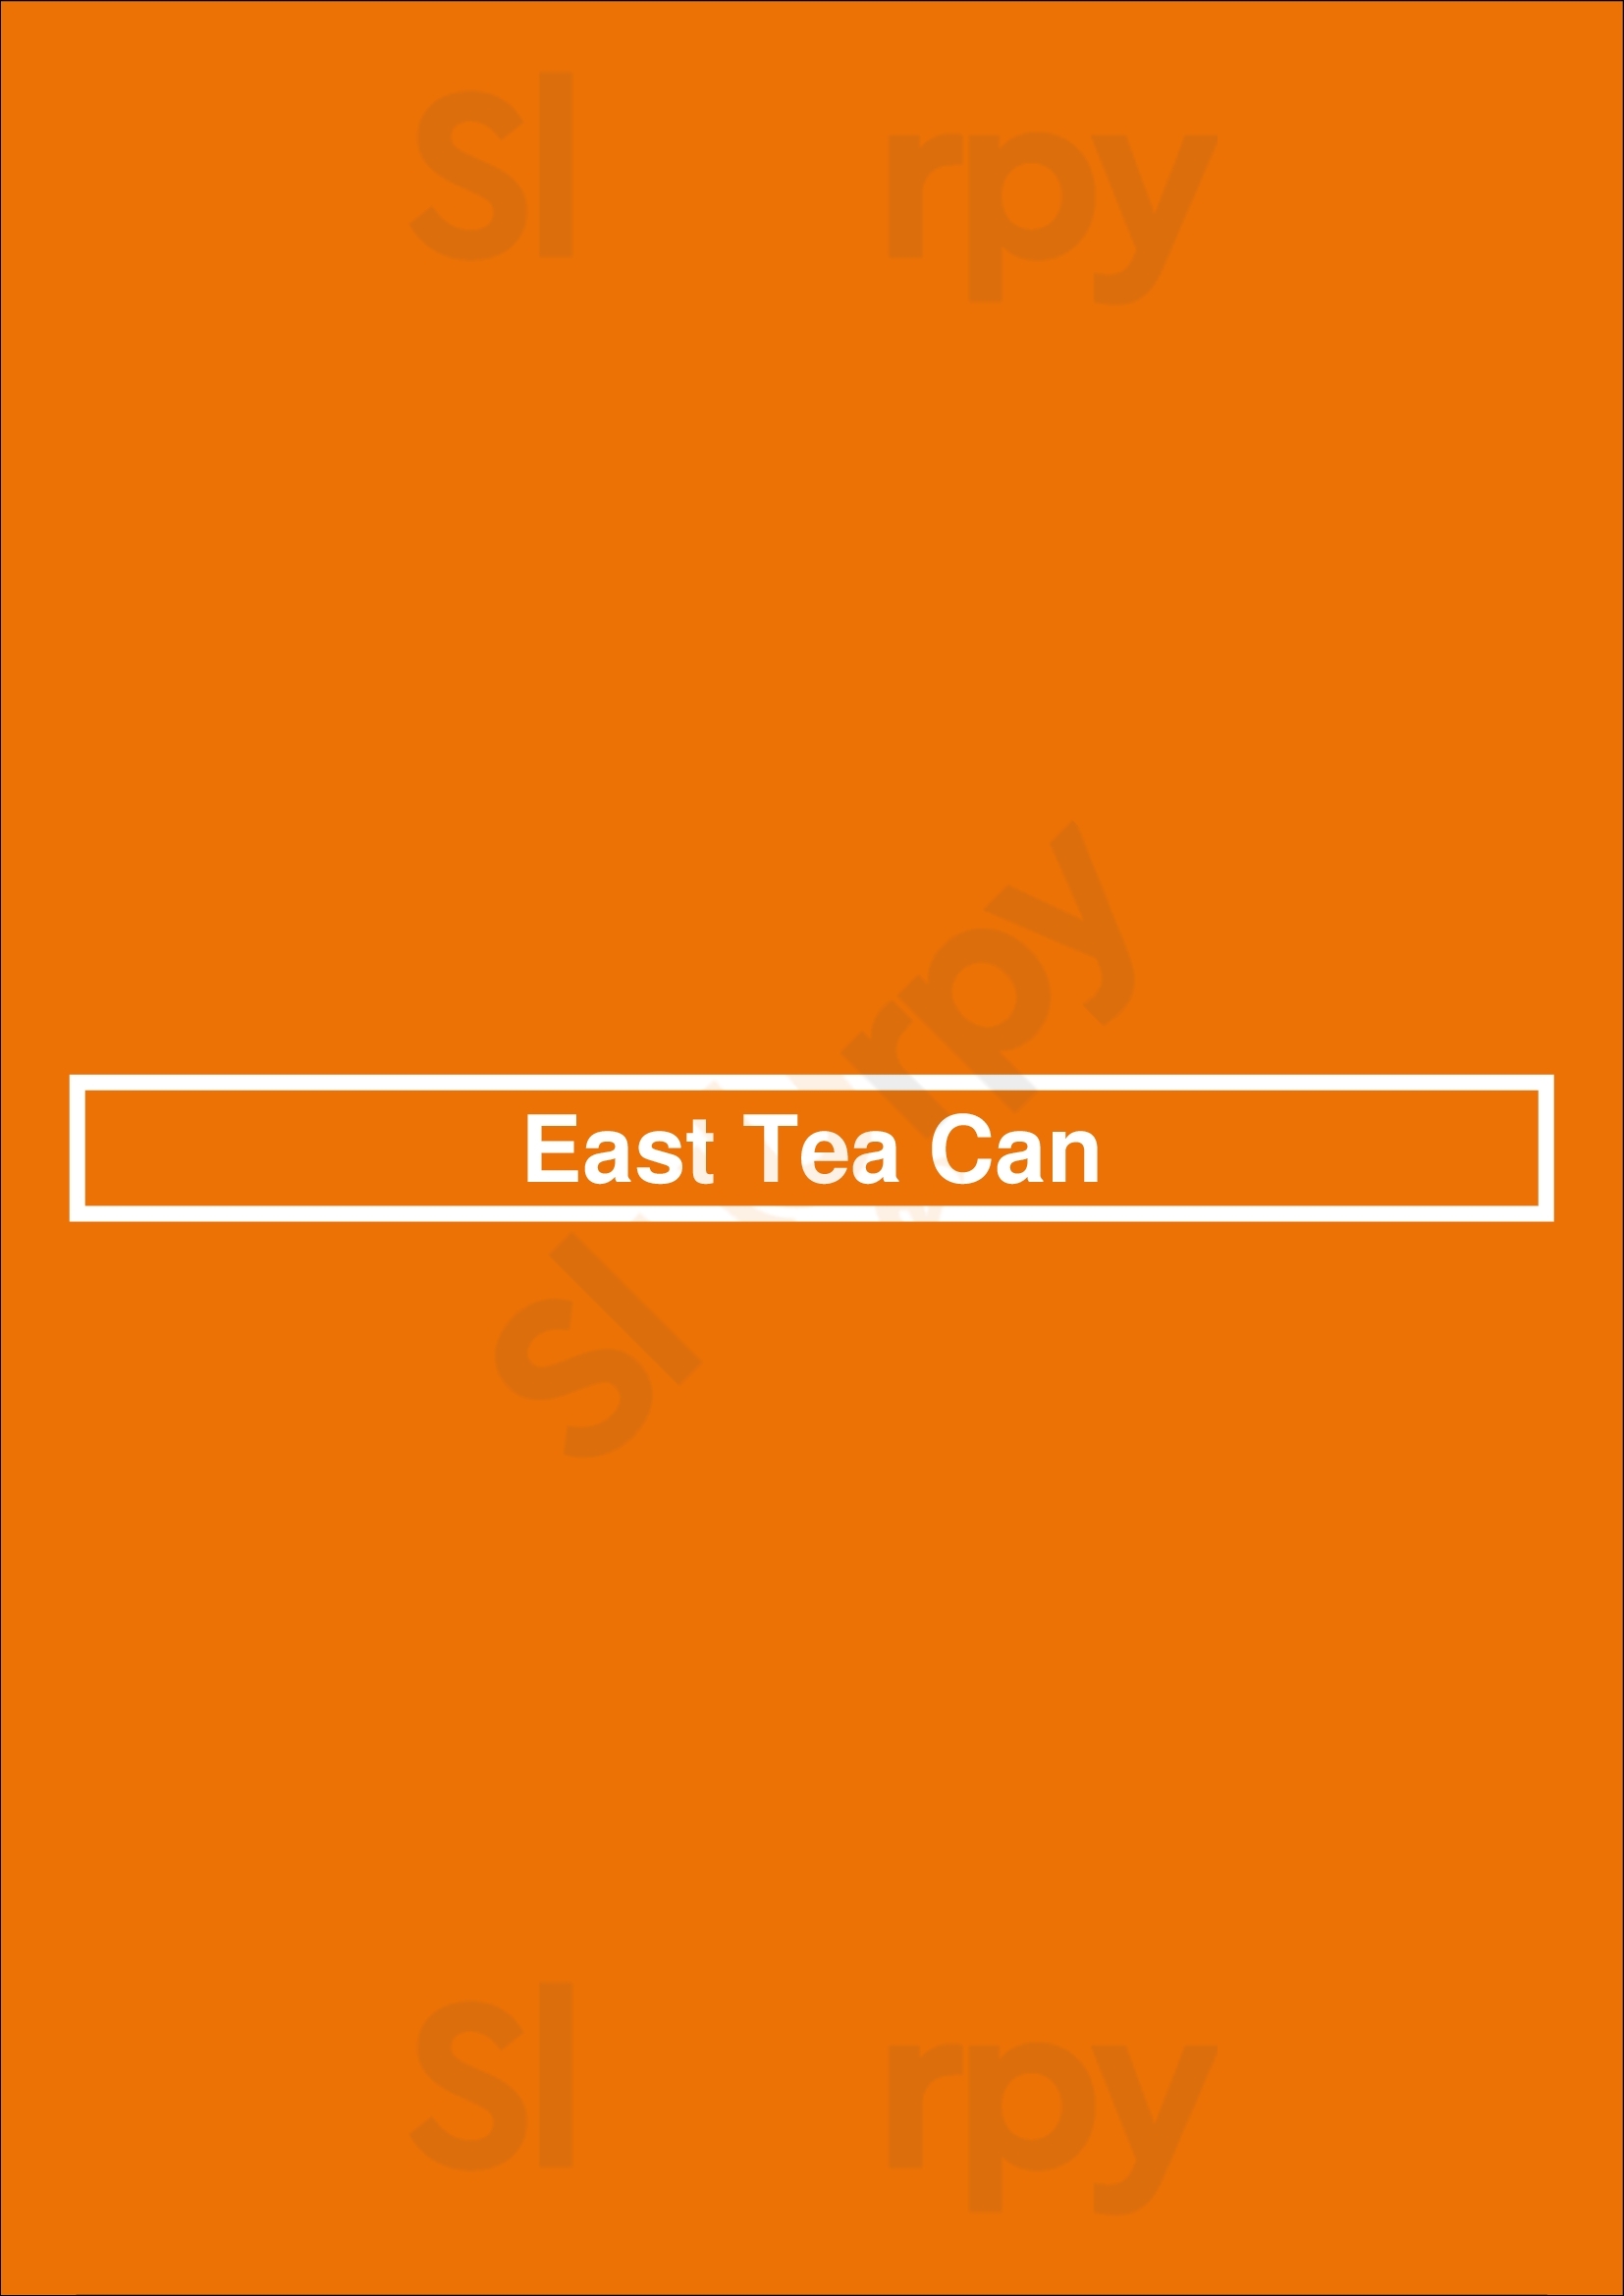 East Tea Can Mississauga Menu - 1